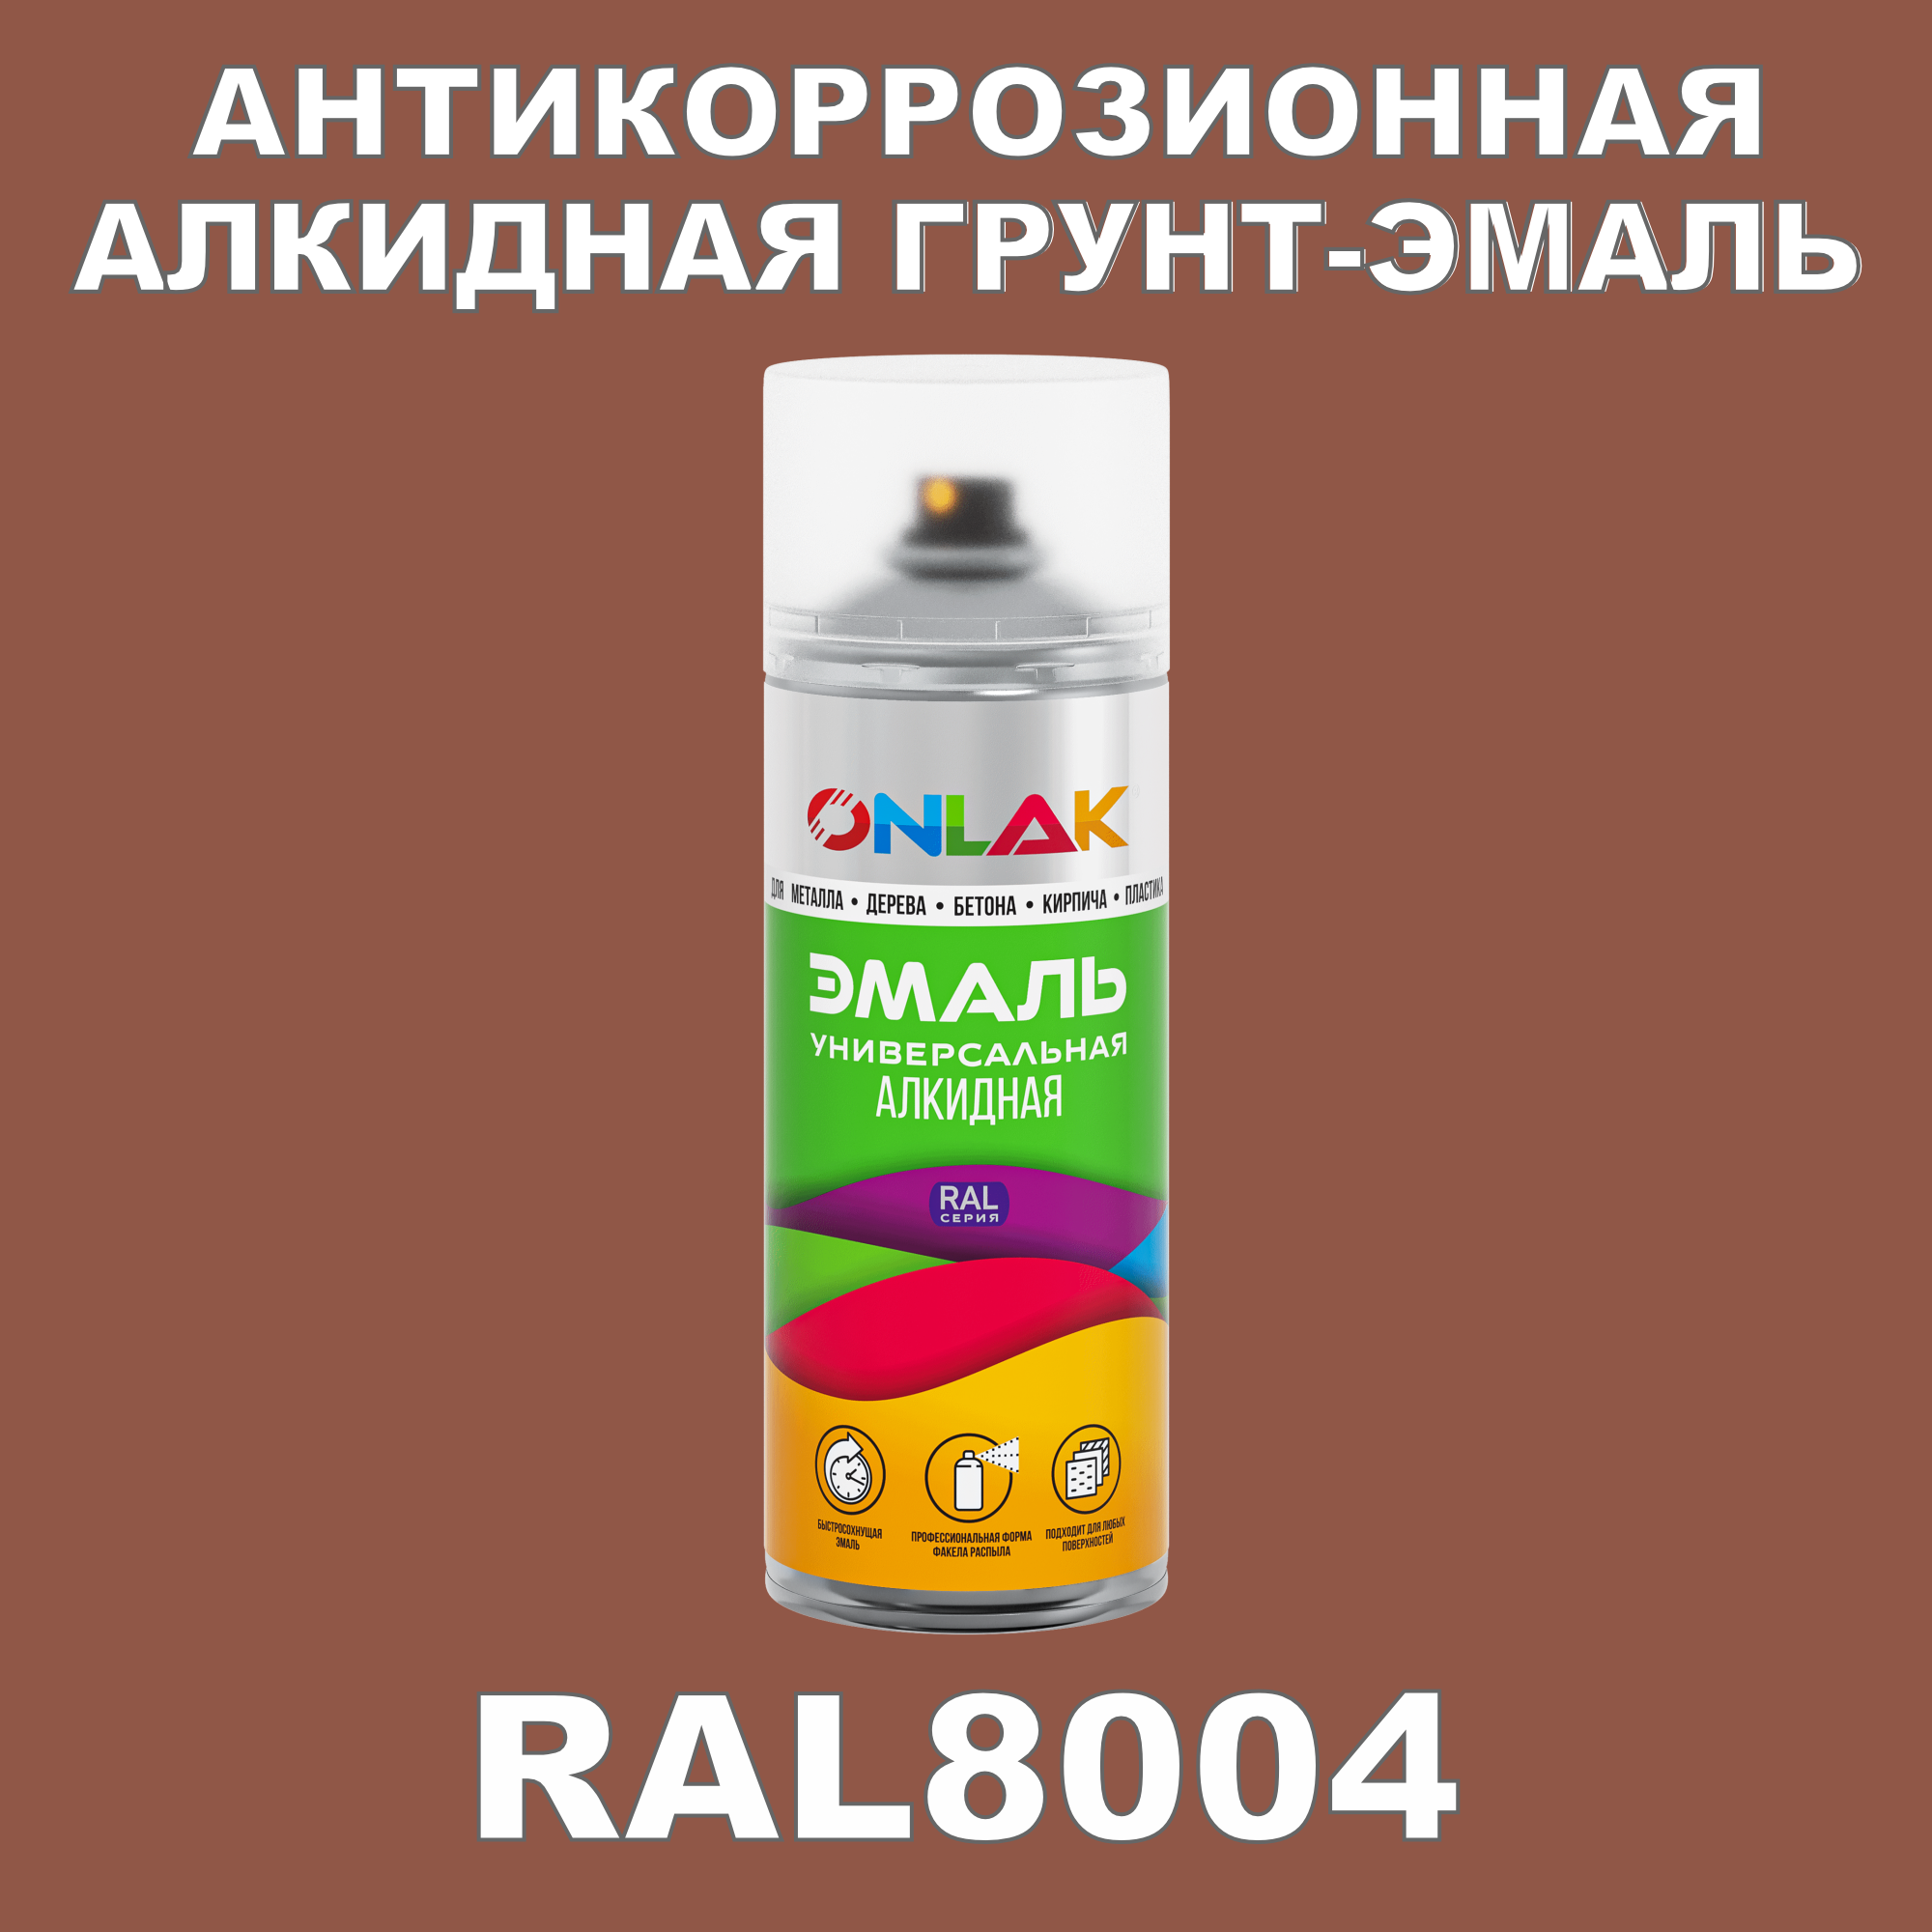 Антикоррозионная грунт-эмаль ONLAK RAL8004 полуматовая для металла и защиты от ржавчины